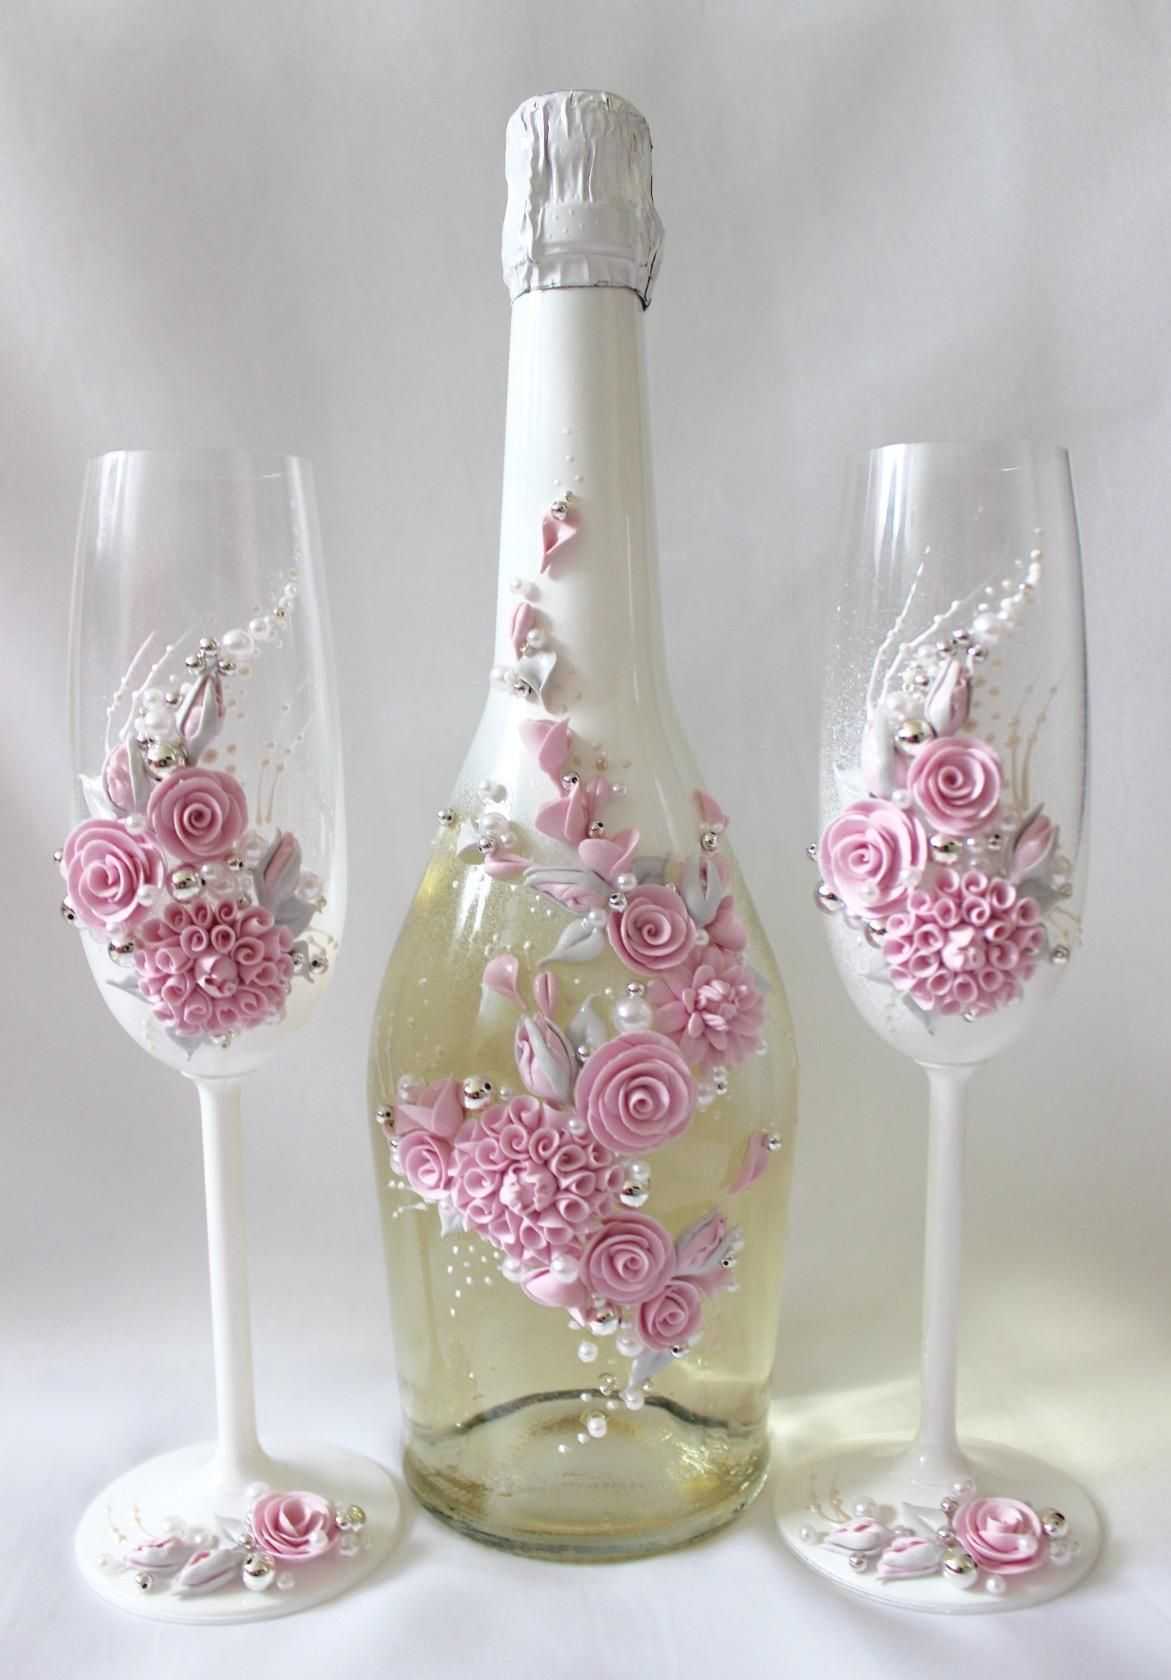 Мастер-класс по декупажу свадебных бутылок шампанского (фото-подборка различных стилей прилагается)